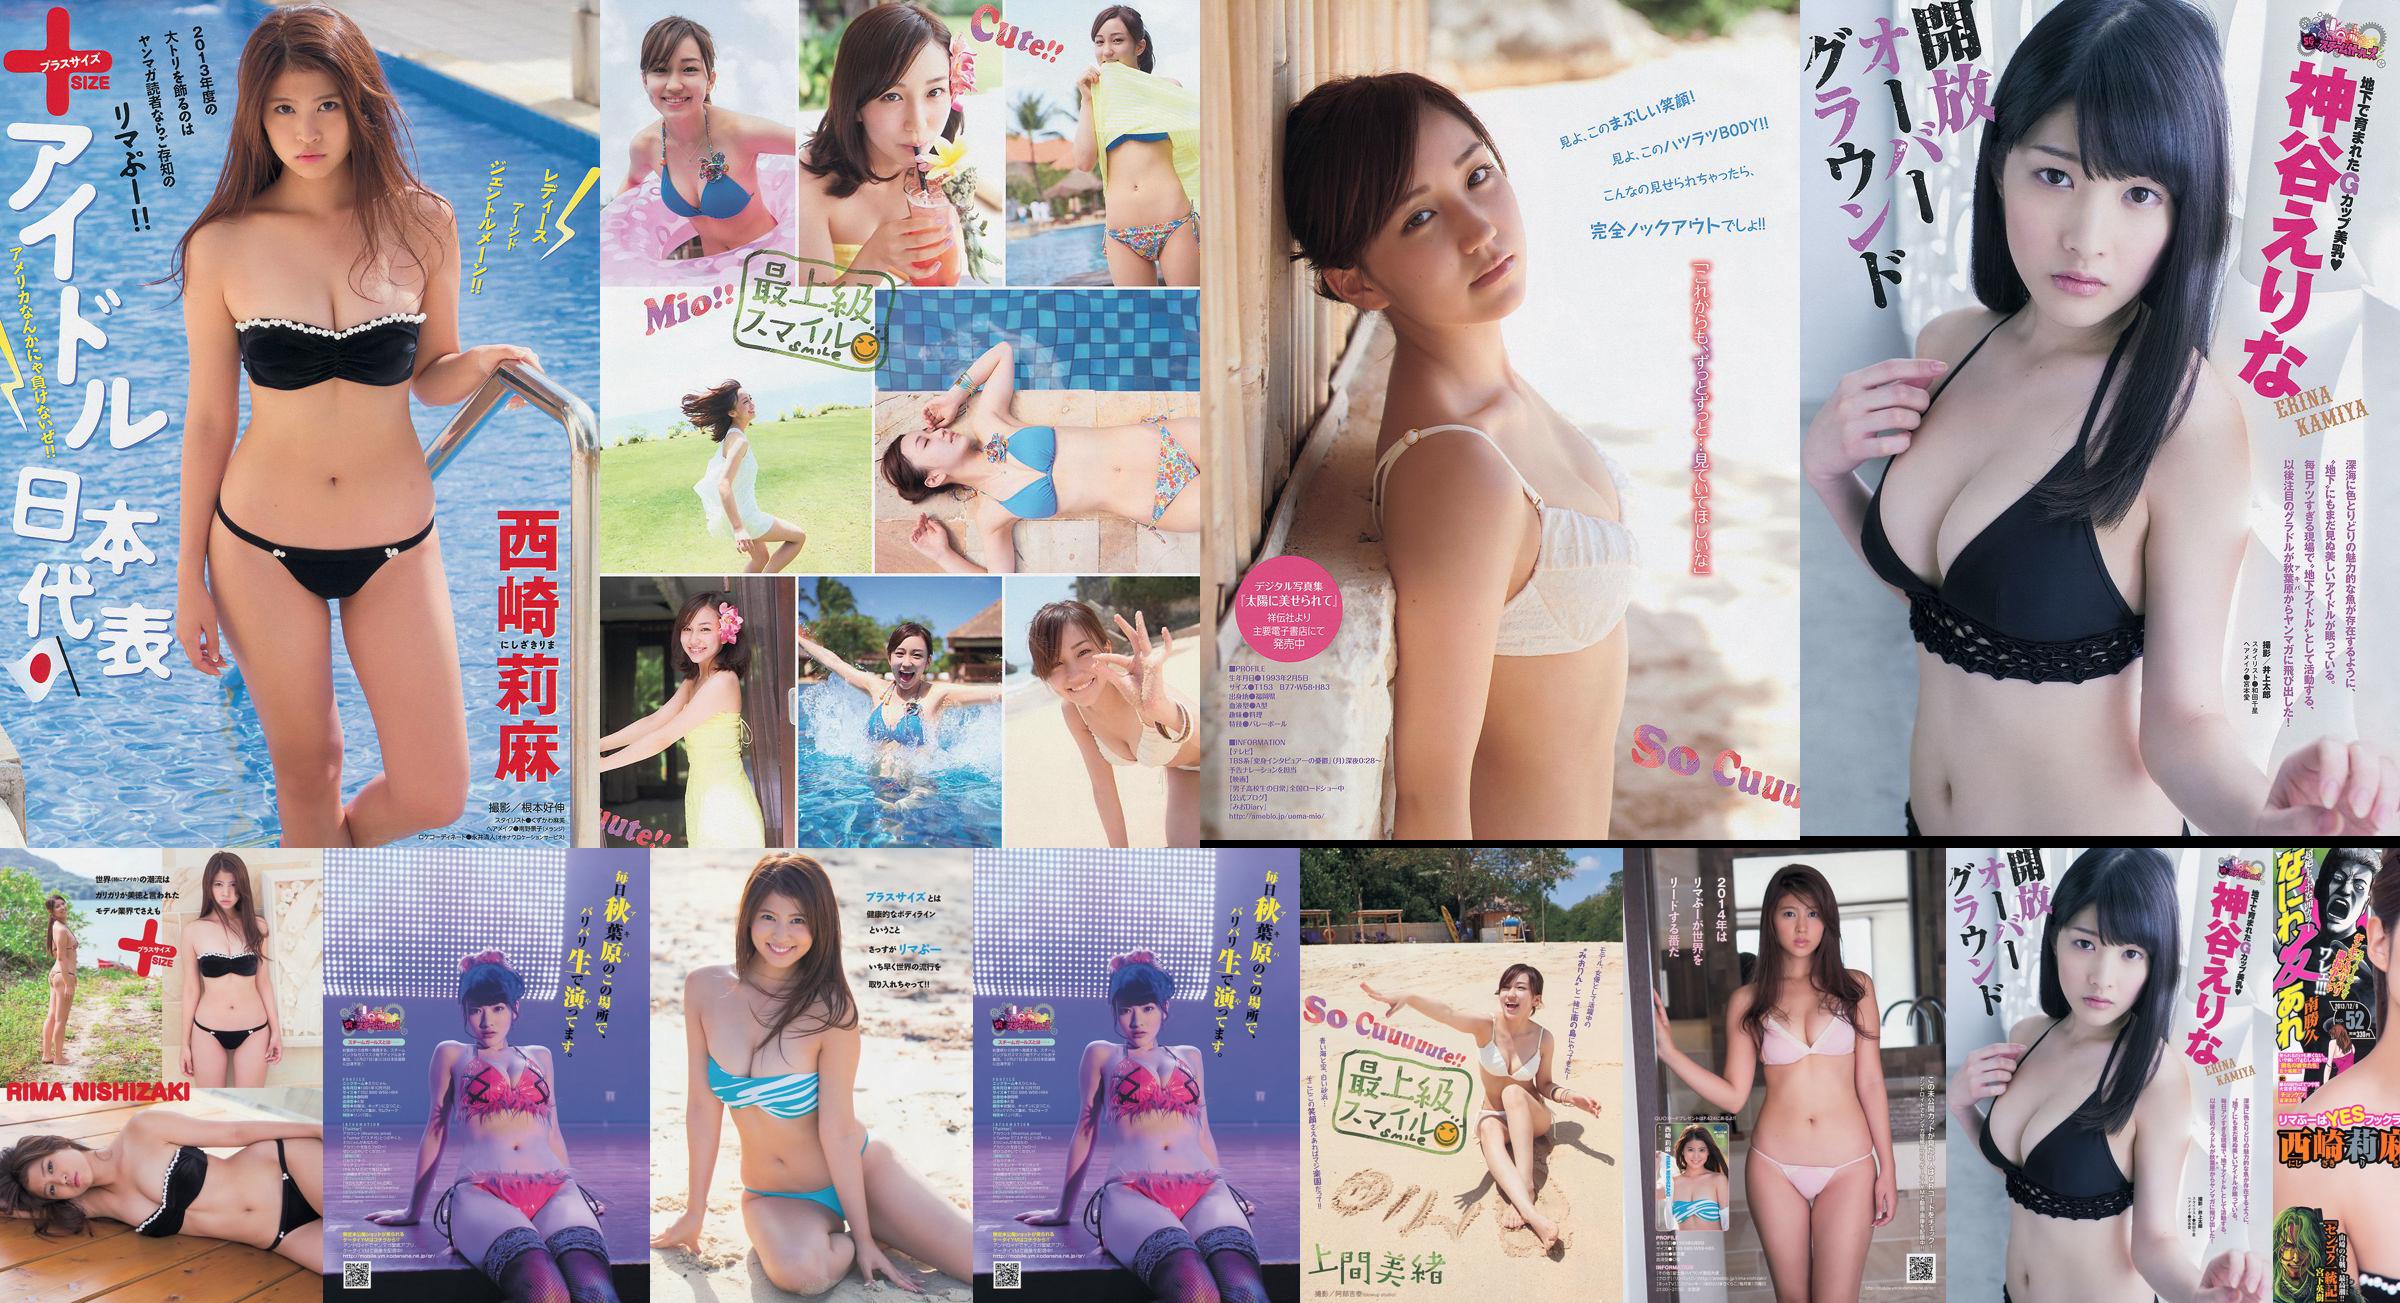 [Junge Zeitschrift] Rima Nishizaki Mio Uema Erina Kamiya 2013 Nr. 52 Foto Moshi No.9417e5 Seite 3